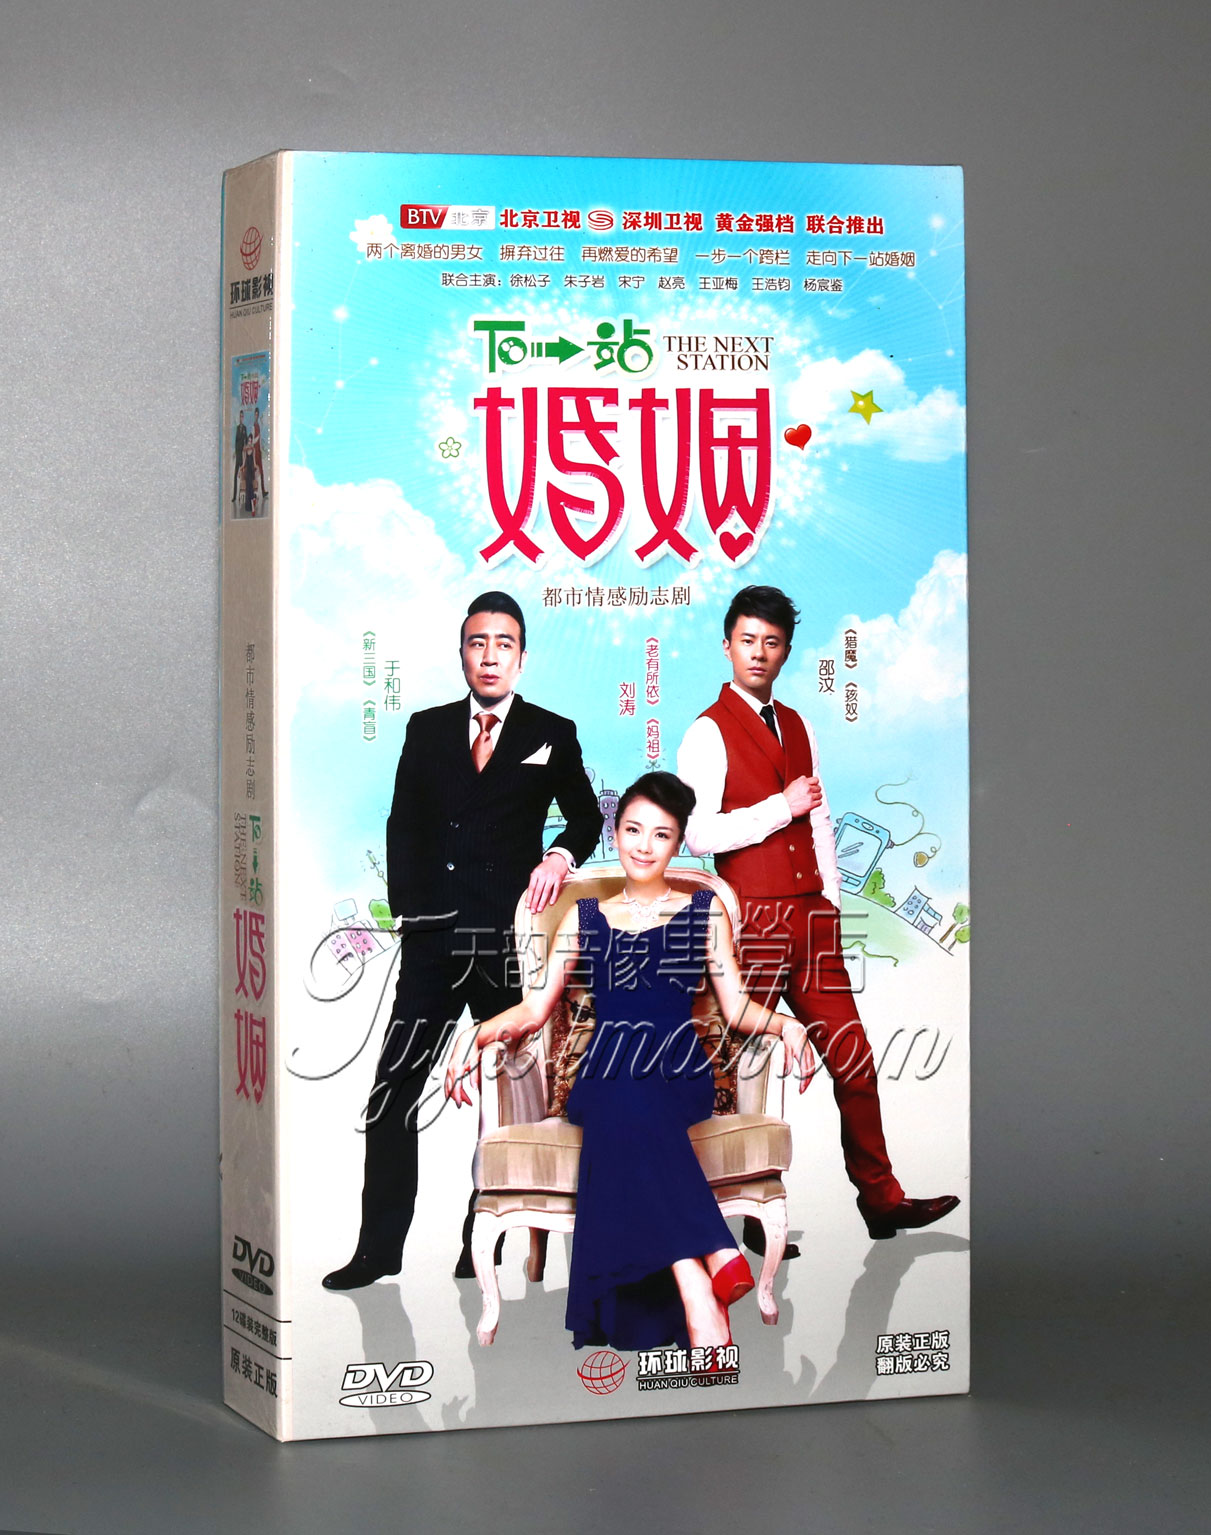 正版电视剧碟片DVD光盘 下一站婚姻 经济版 8DVD 于和伟 刘涛